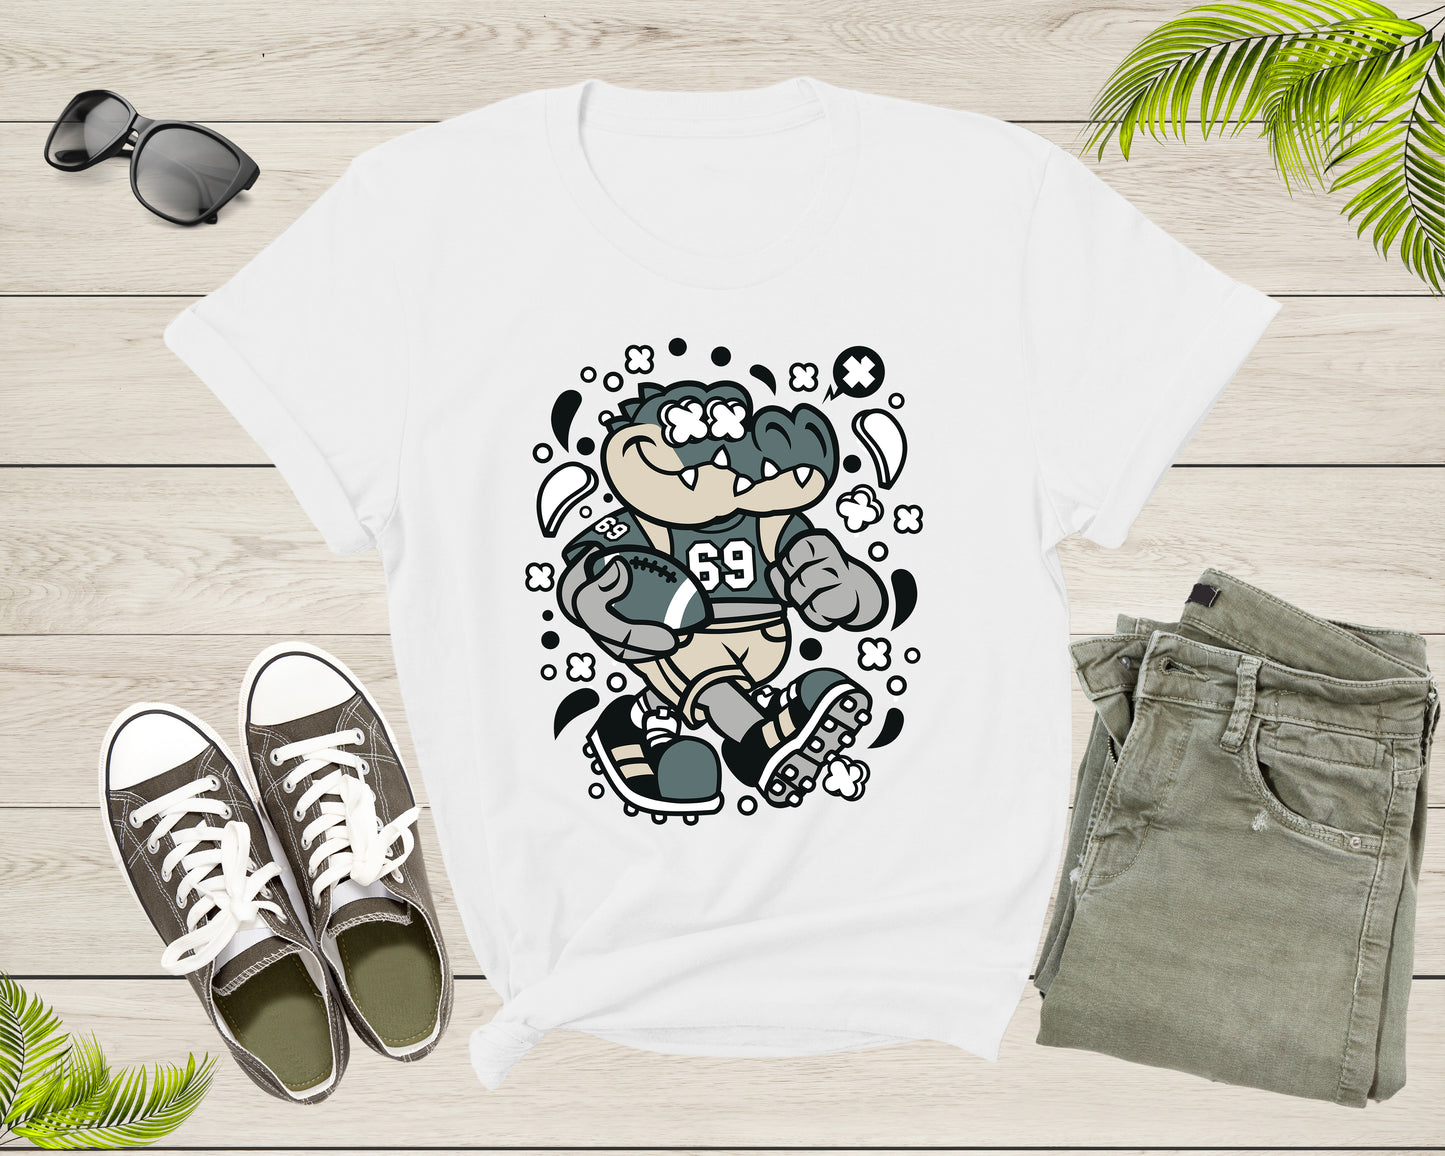 Football Crocodile Alligator Animal Holding Football Pigskin T-Shirt Alligator Lover Gift T Shirt for Men Women Kids Boys Girls Tshirt